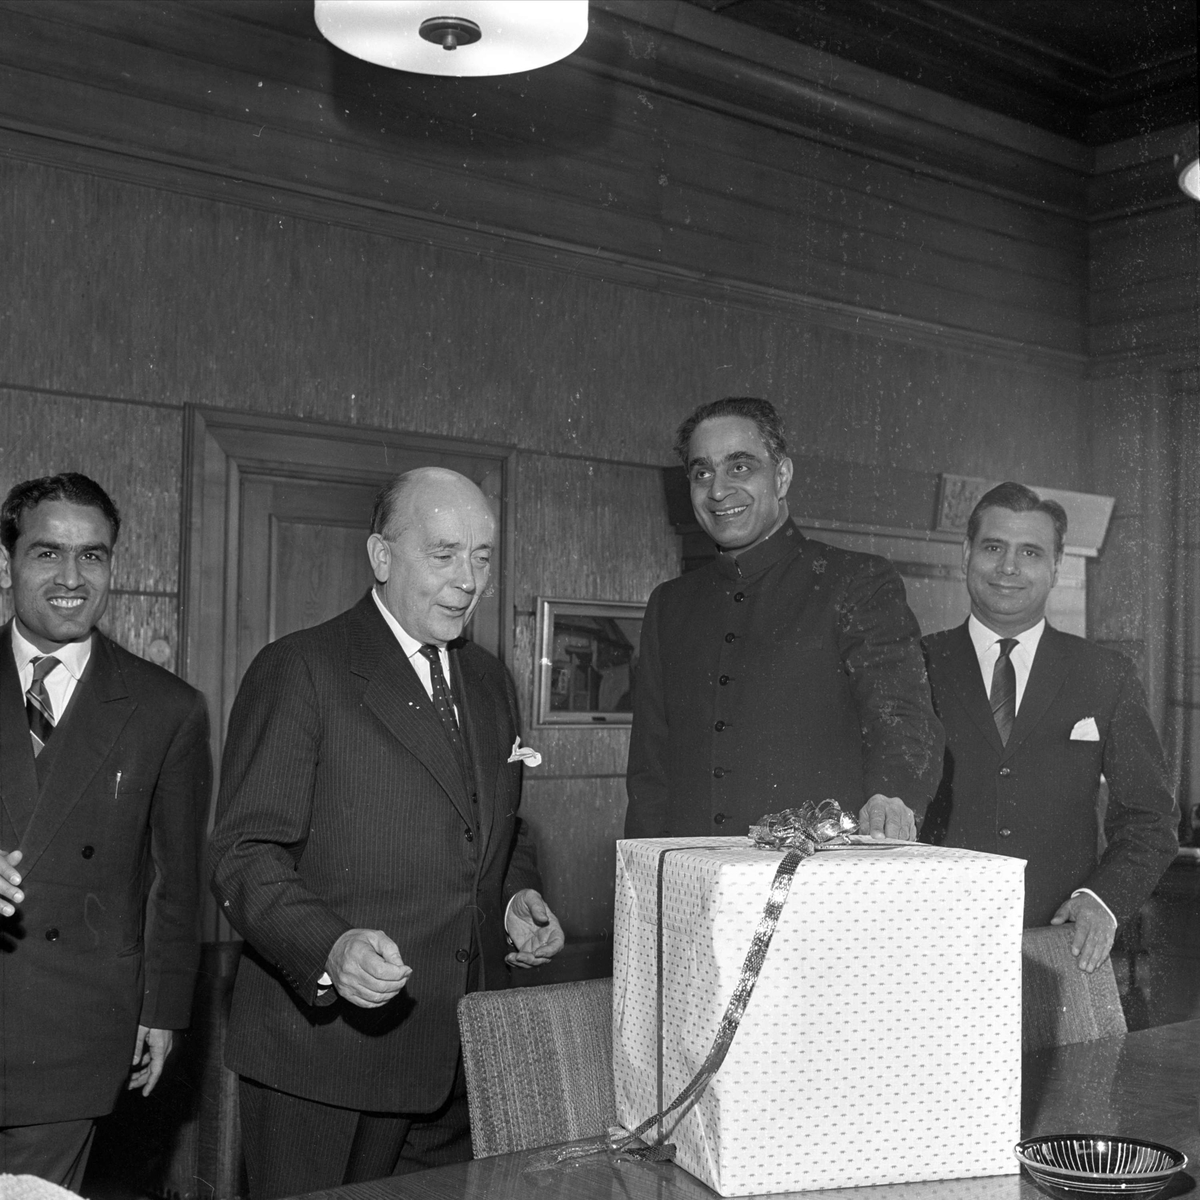 Gave fra India til Oslo, ambassadøren og T. Bull. 27.11.1964.